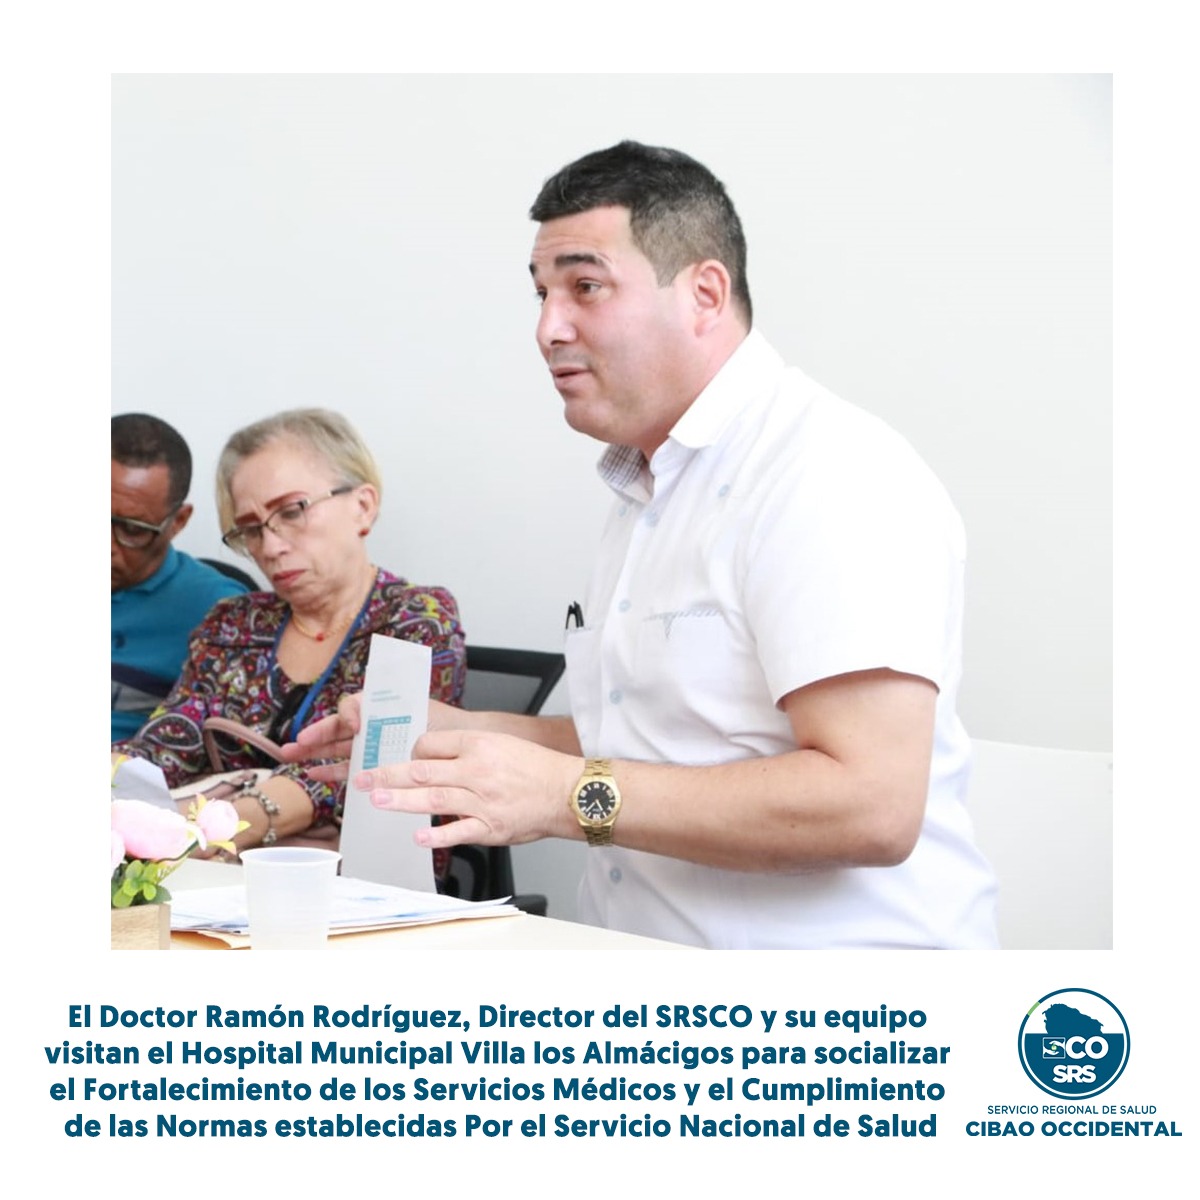 EL doctor Ramon Rodríguez director regional del SRSCO y su equipo visitan el hospital Municipal Villa los Almácigos Fortalecimiento de los Servicios Médicos y Cumplimiento de las Normas establecidas Por el Servicio Nacional de Salud.